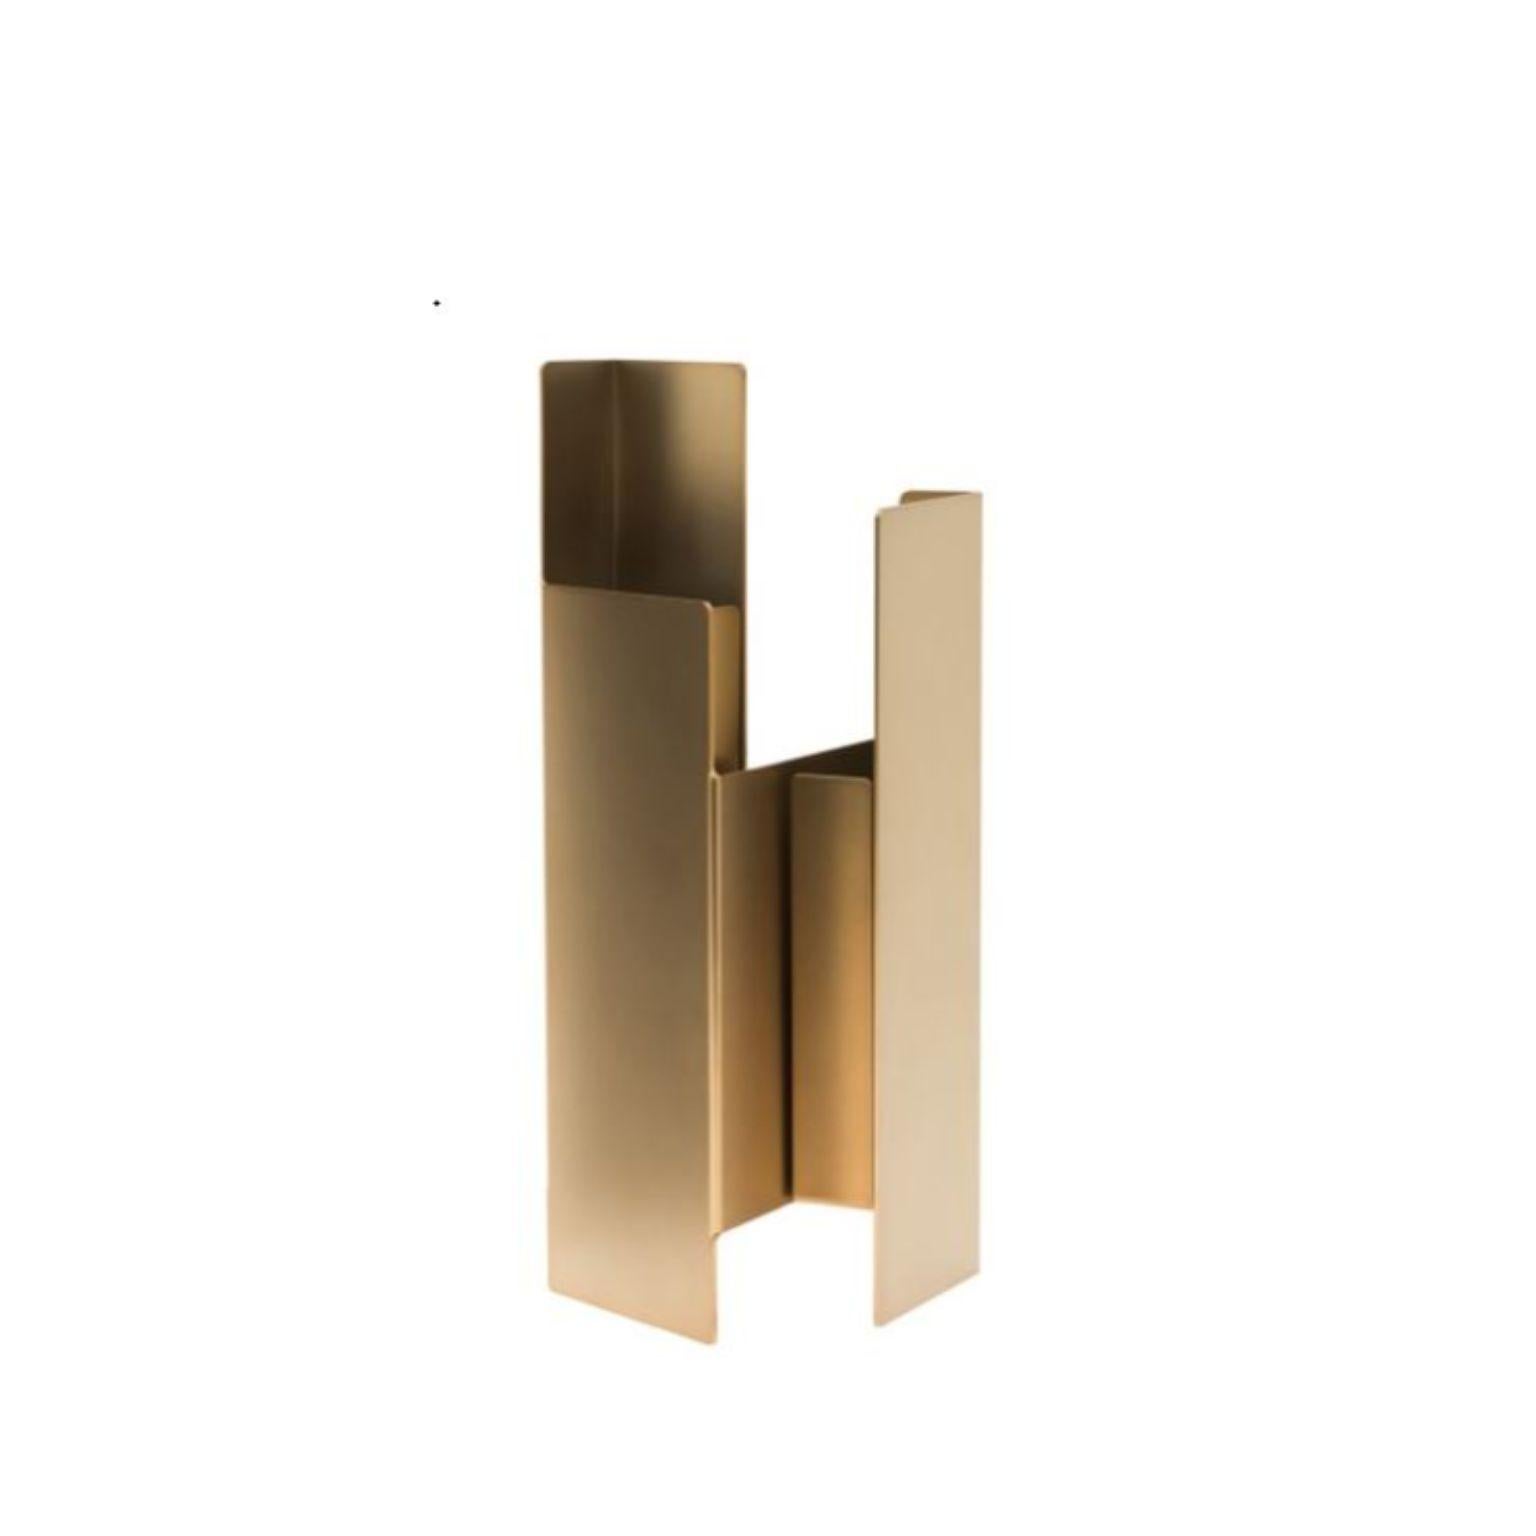 Ensemble de 2 vases Fugit en bronze mat par Mason Editions
Design/One : Matteo Fiorini
Dimensions : 12 × 15 × 34 cm
MATERIAL : Fer, verre Pirex

Le vase Fugit est constitué d'une feuille de métal qui semble tourner et se refermer sur elle-même,